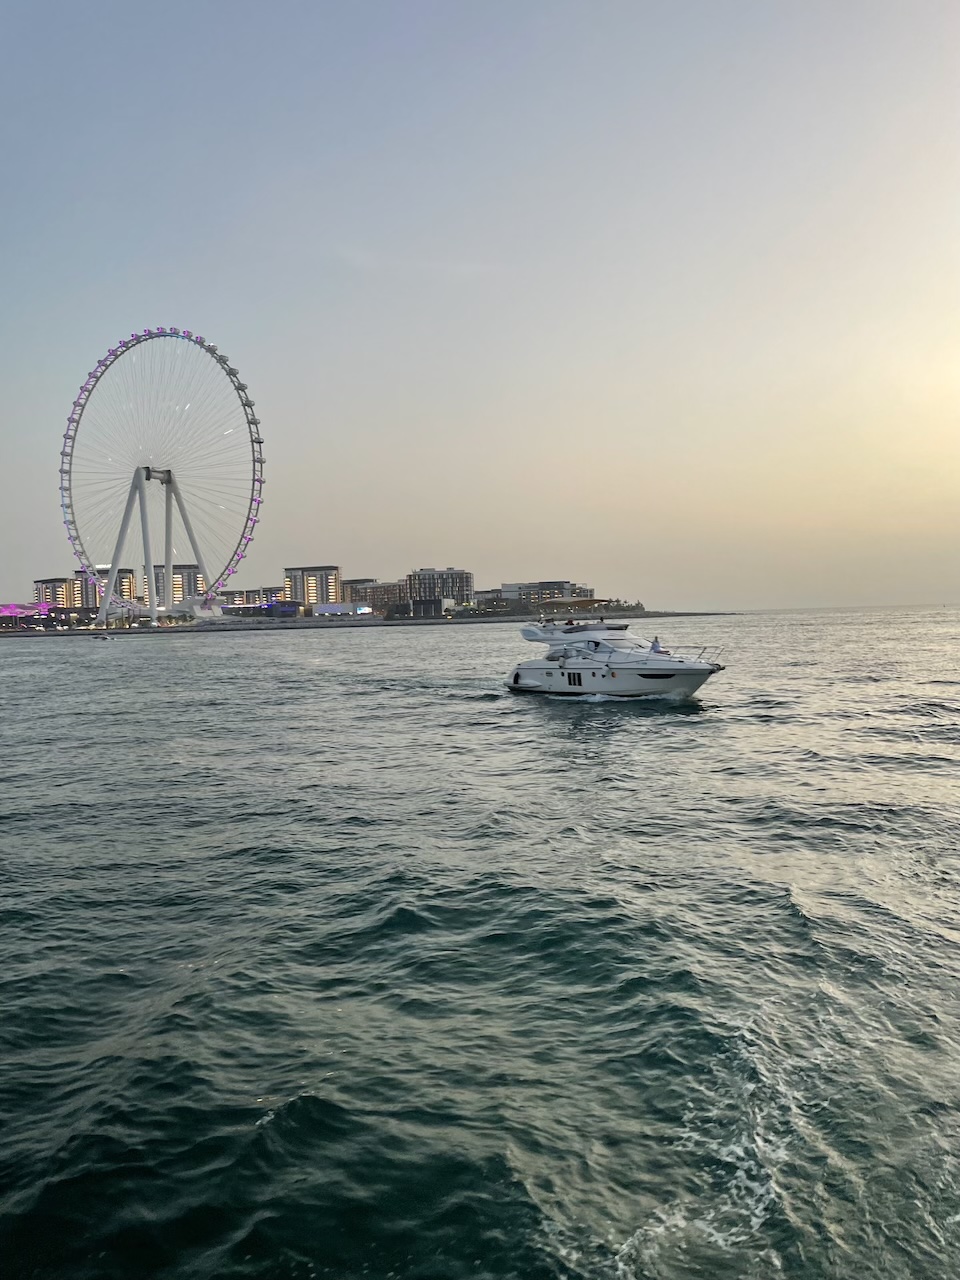 Günstige Yacht-Tour in Dubai: Reisen mit kleinem Budget